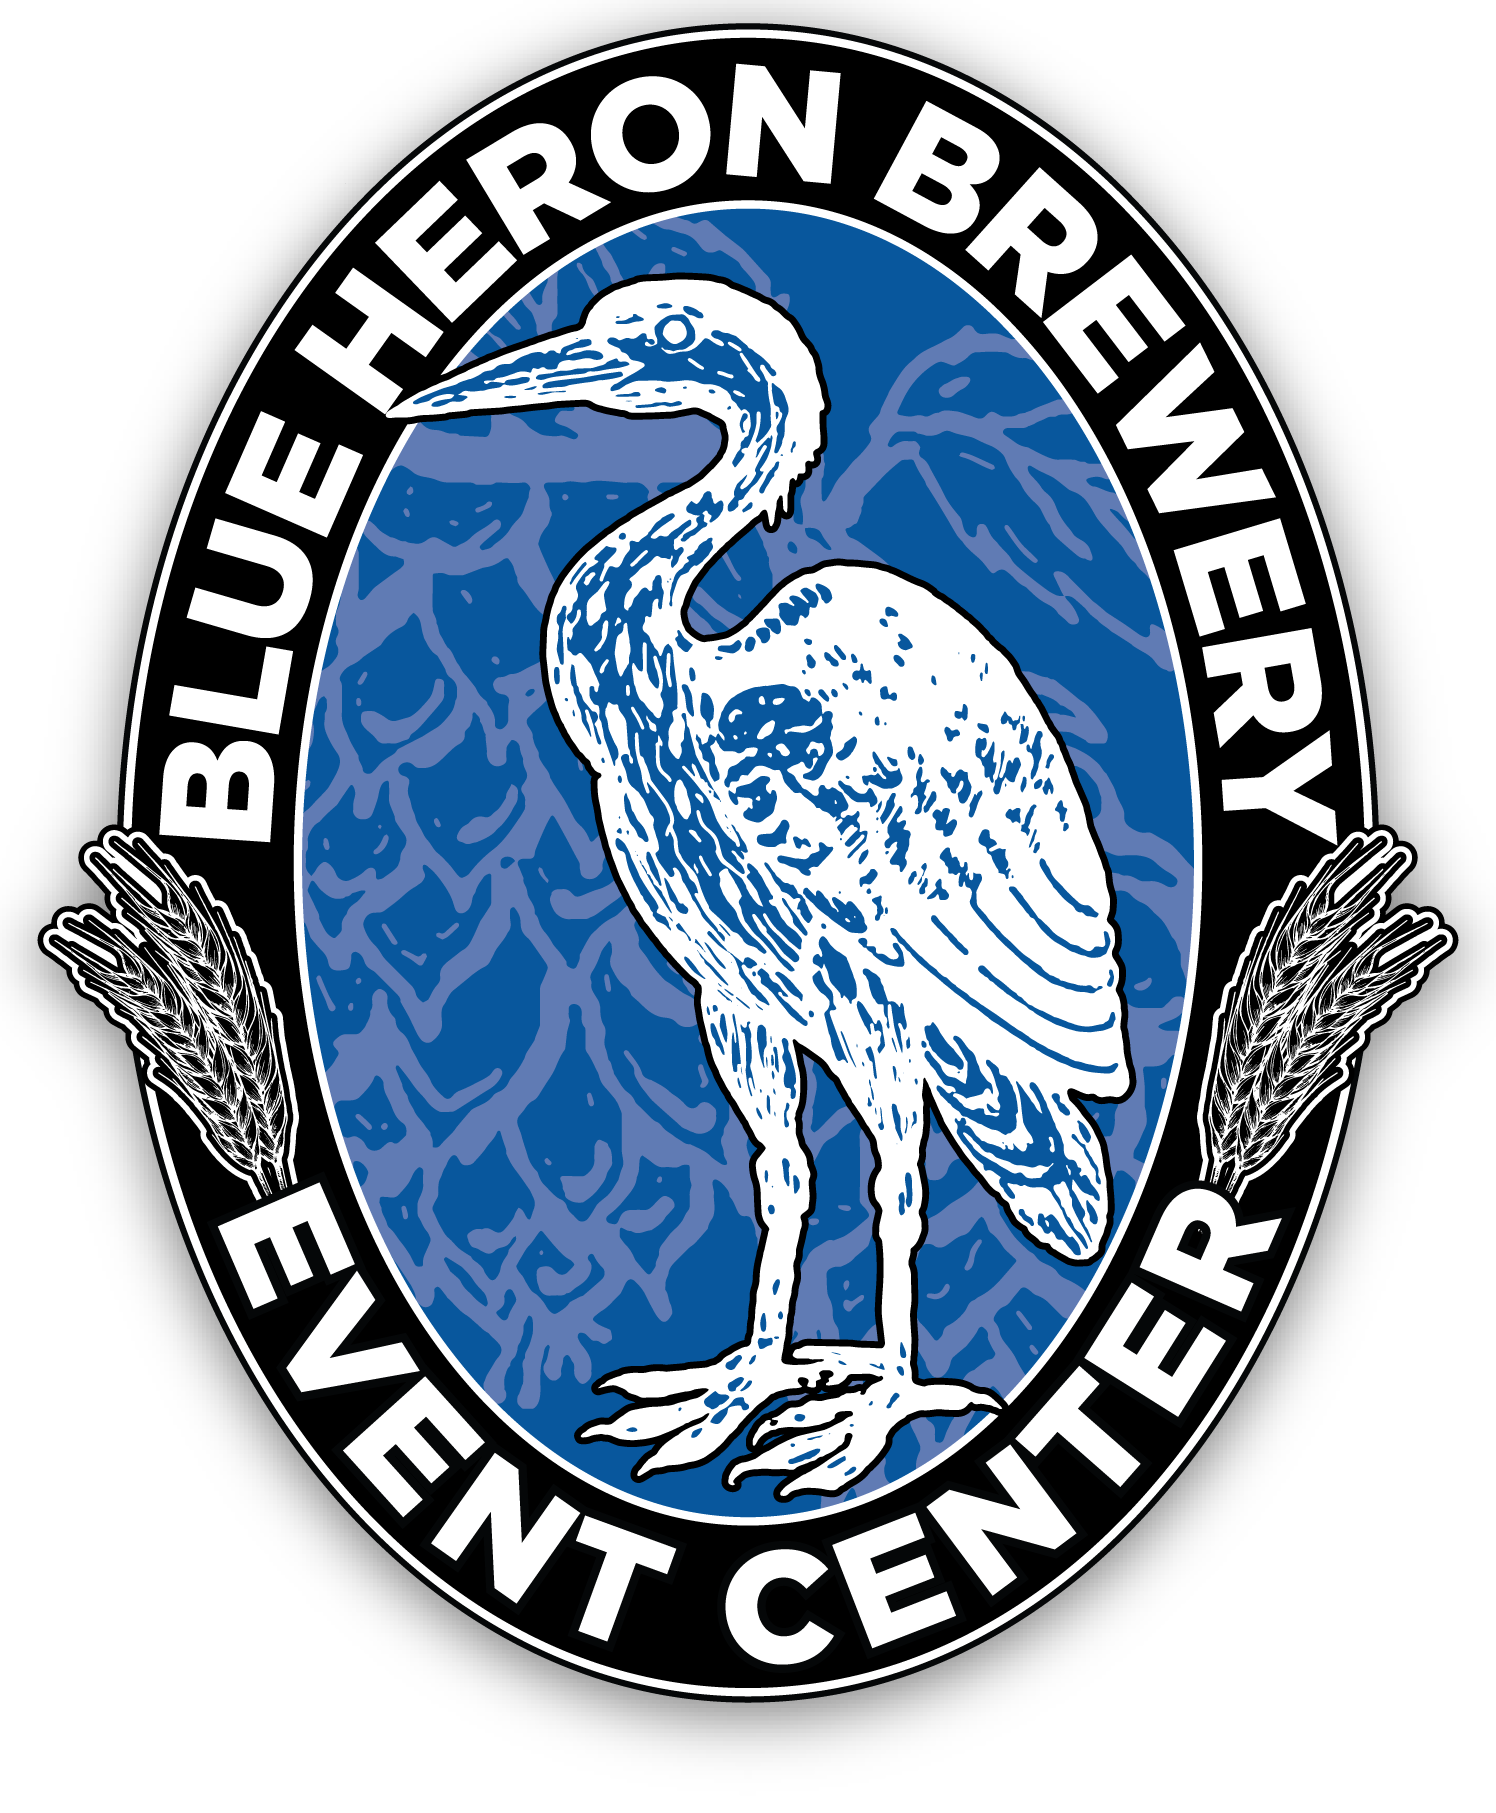 Blue Heron Brewery